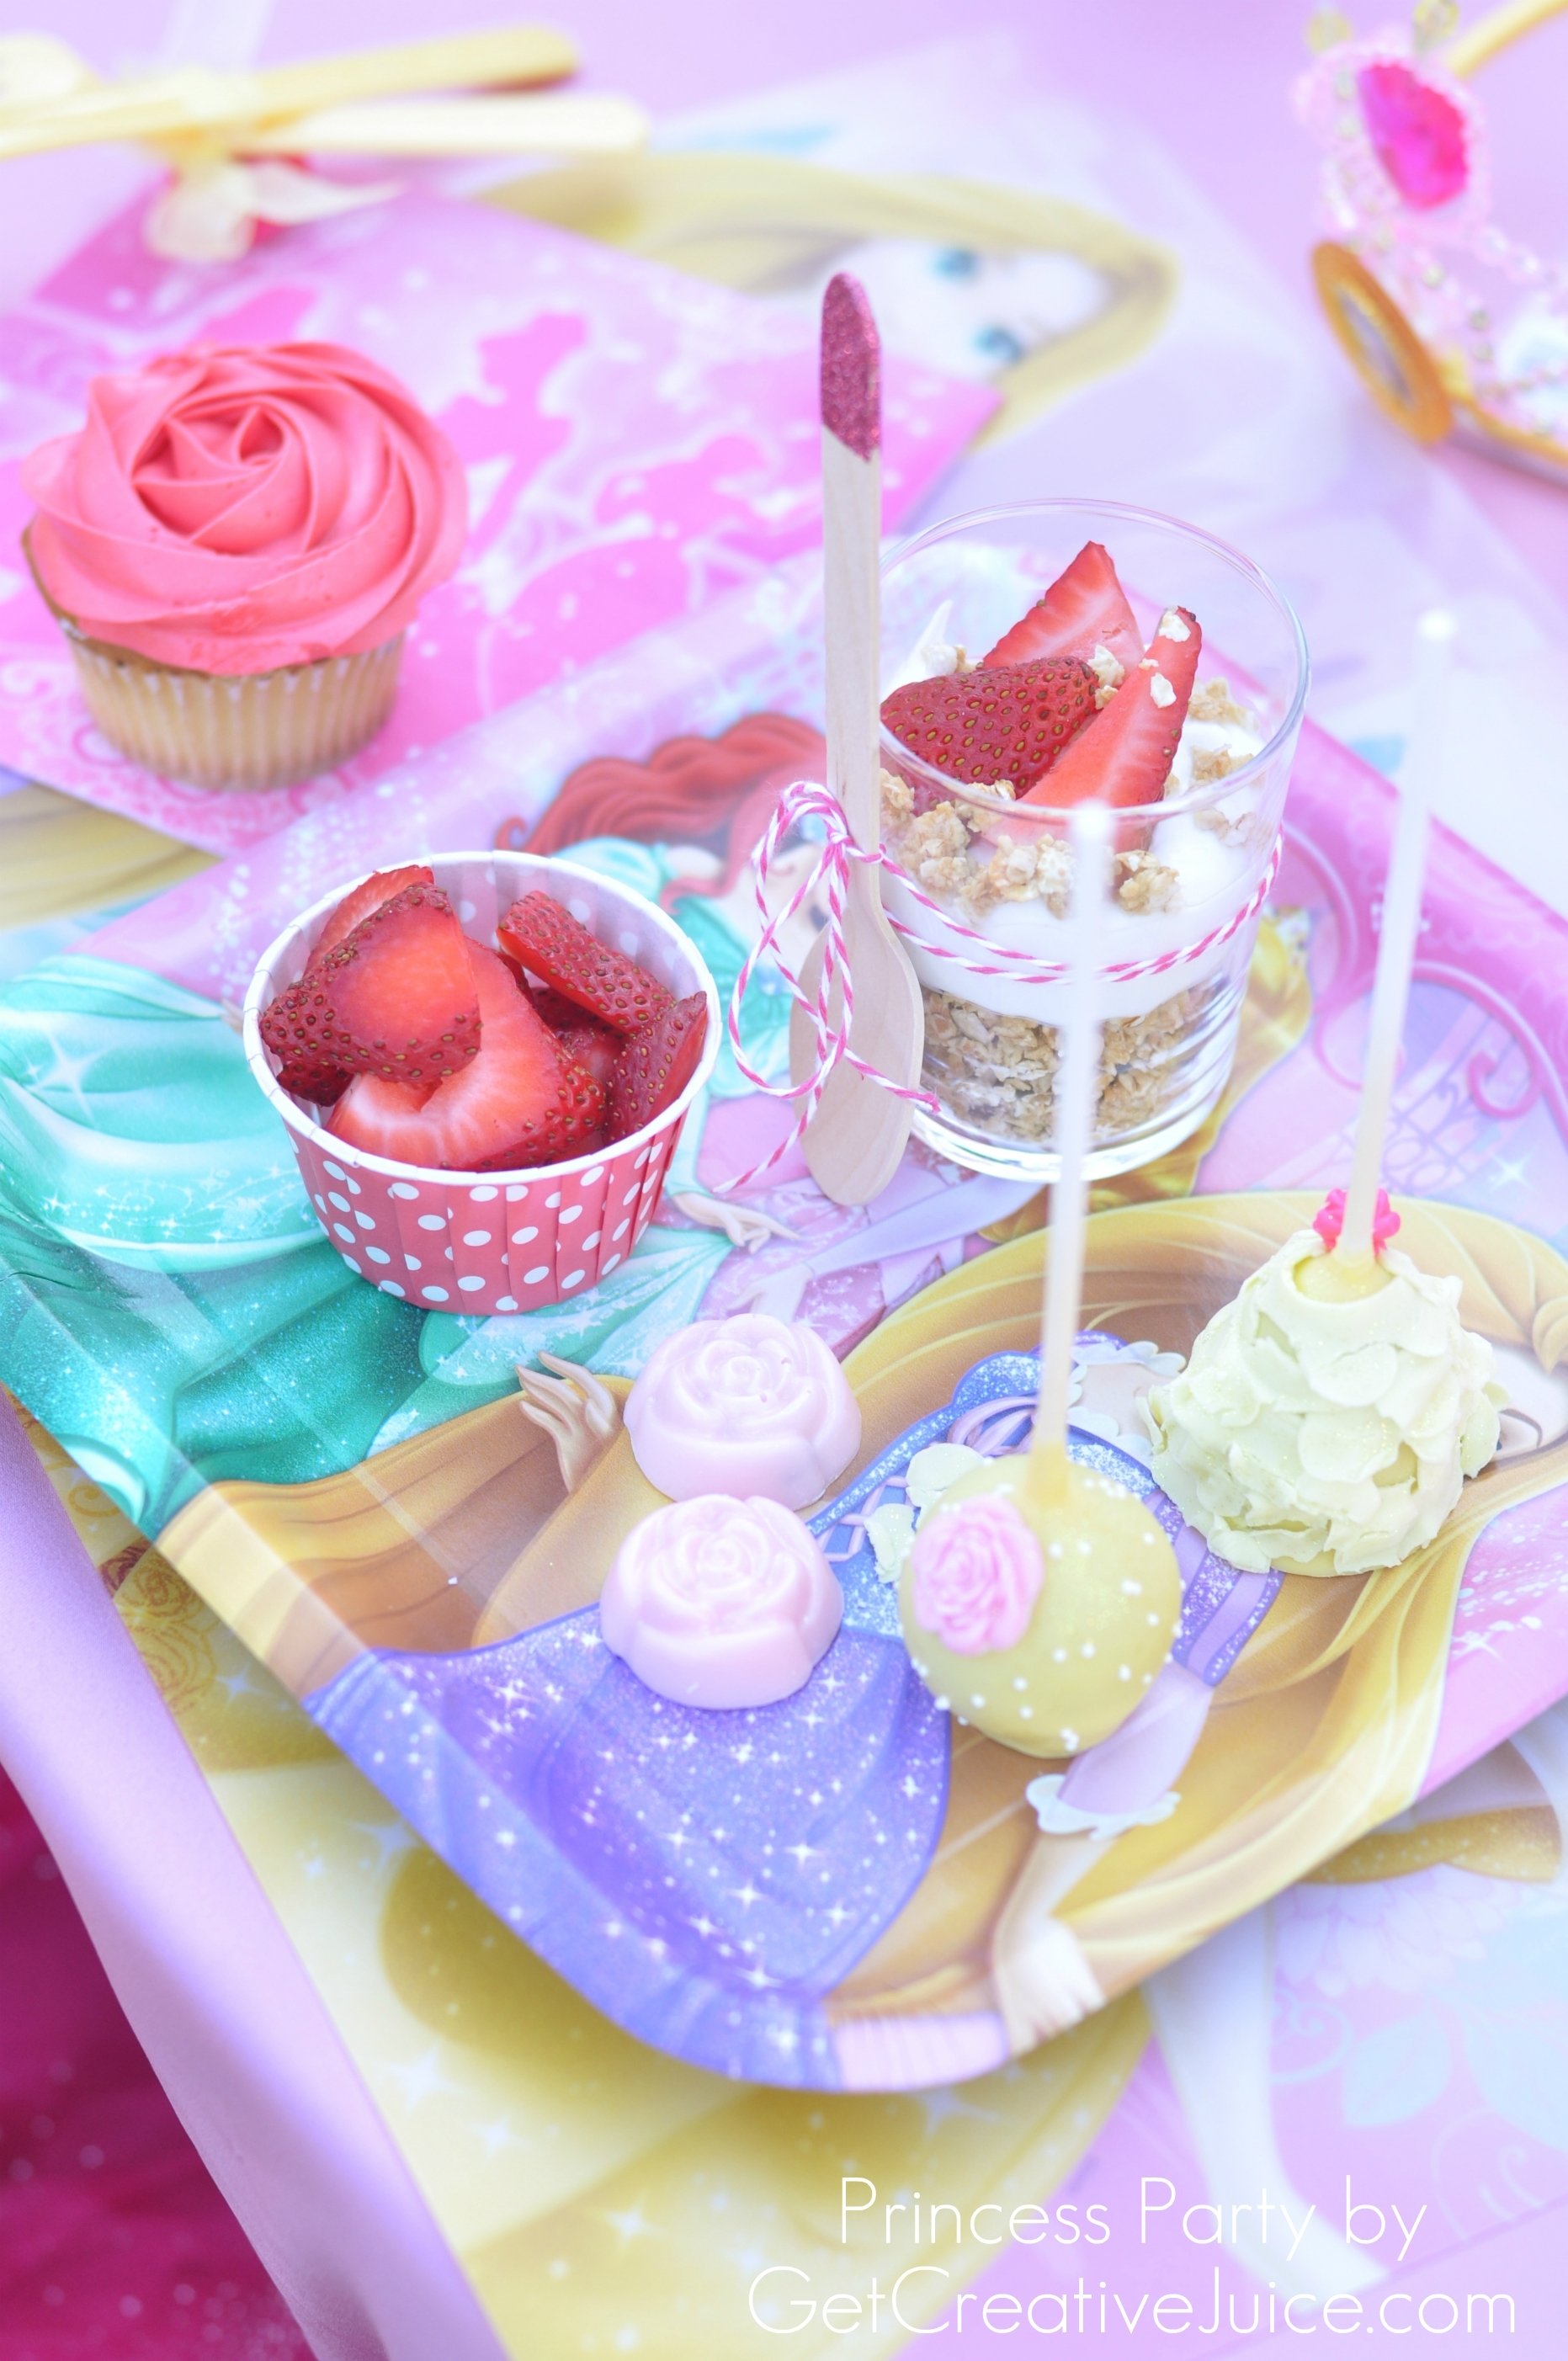 10 Attractive Disney Princess Party Food Ideas disney princess party with belle part 2 creative juice 2023